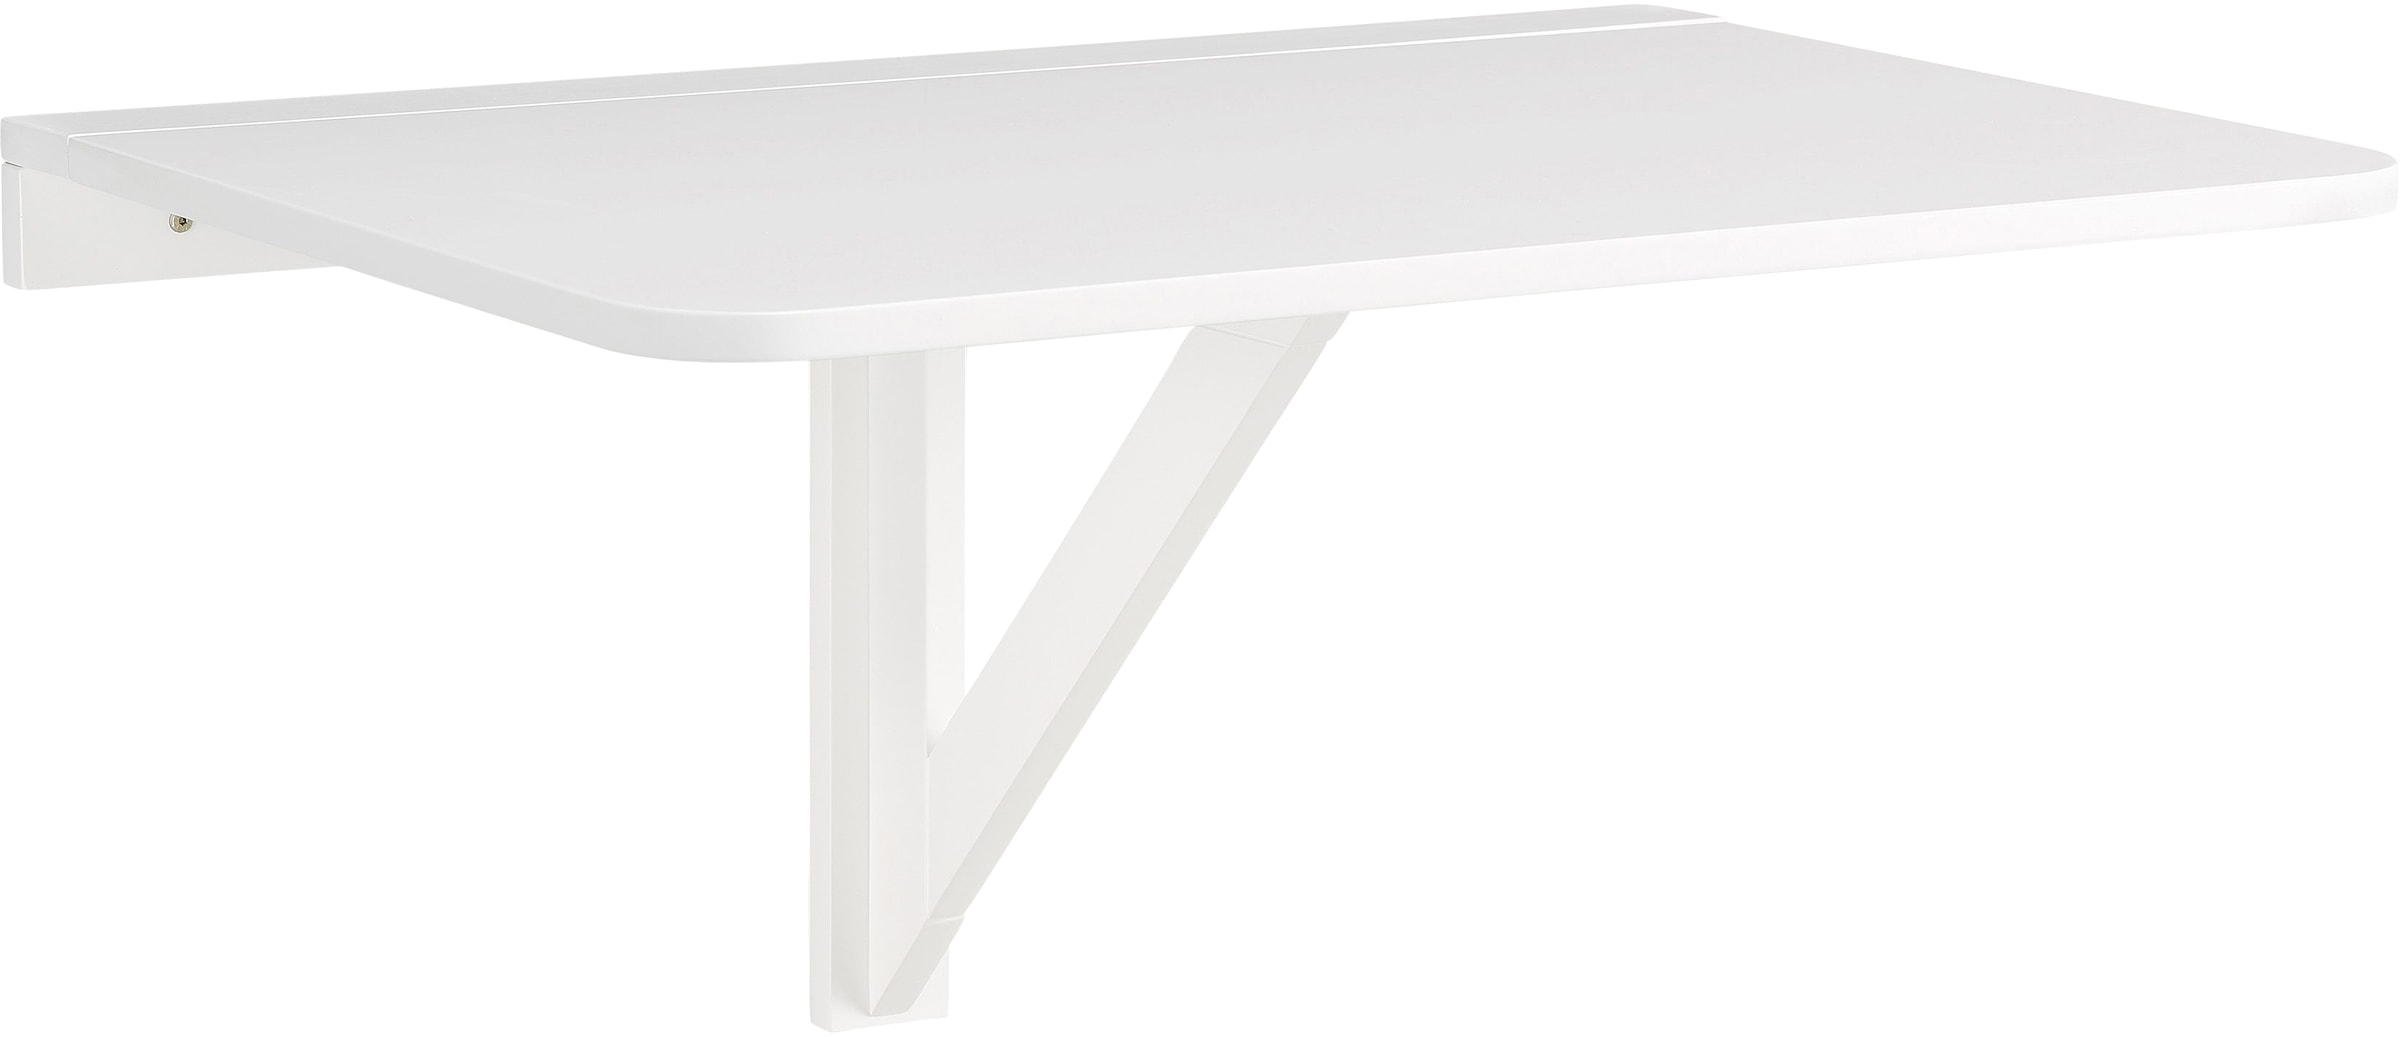 Klapptisch »Trend«, aus weiß lackiertem MDF Holz, platzsparend, Tischplattenstärke 1,8 cm